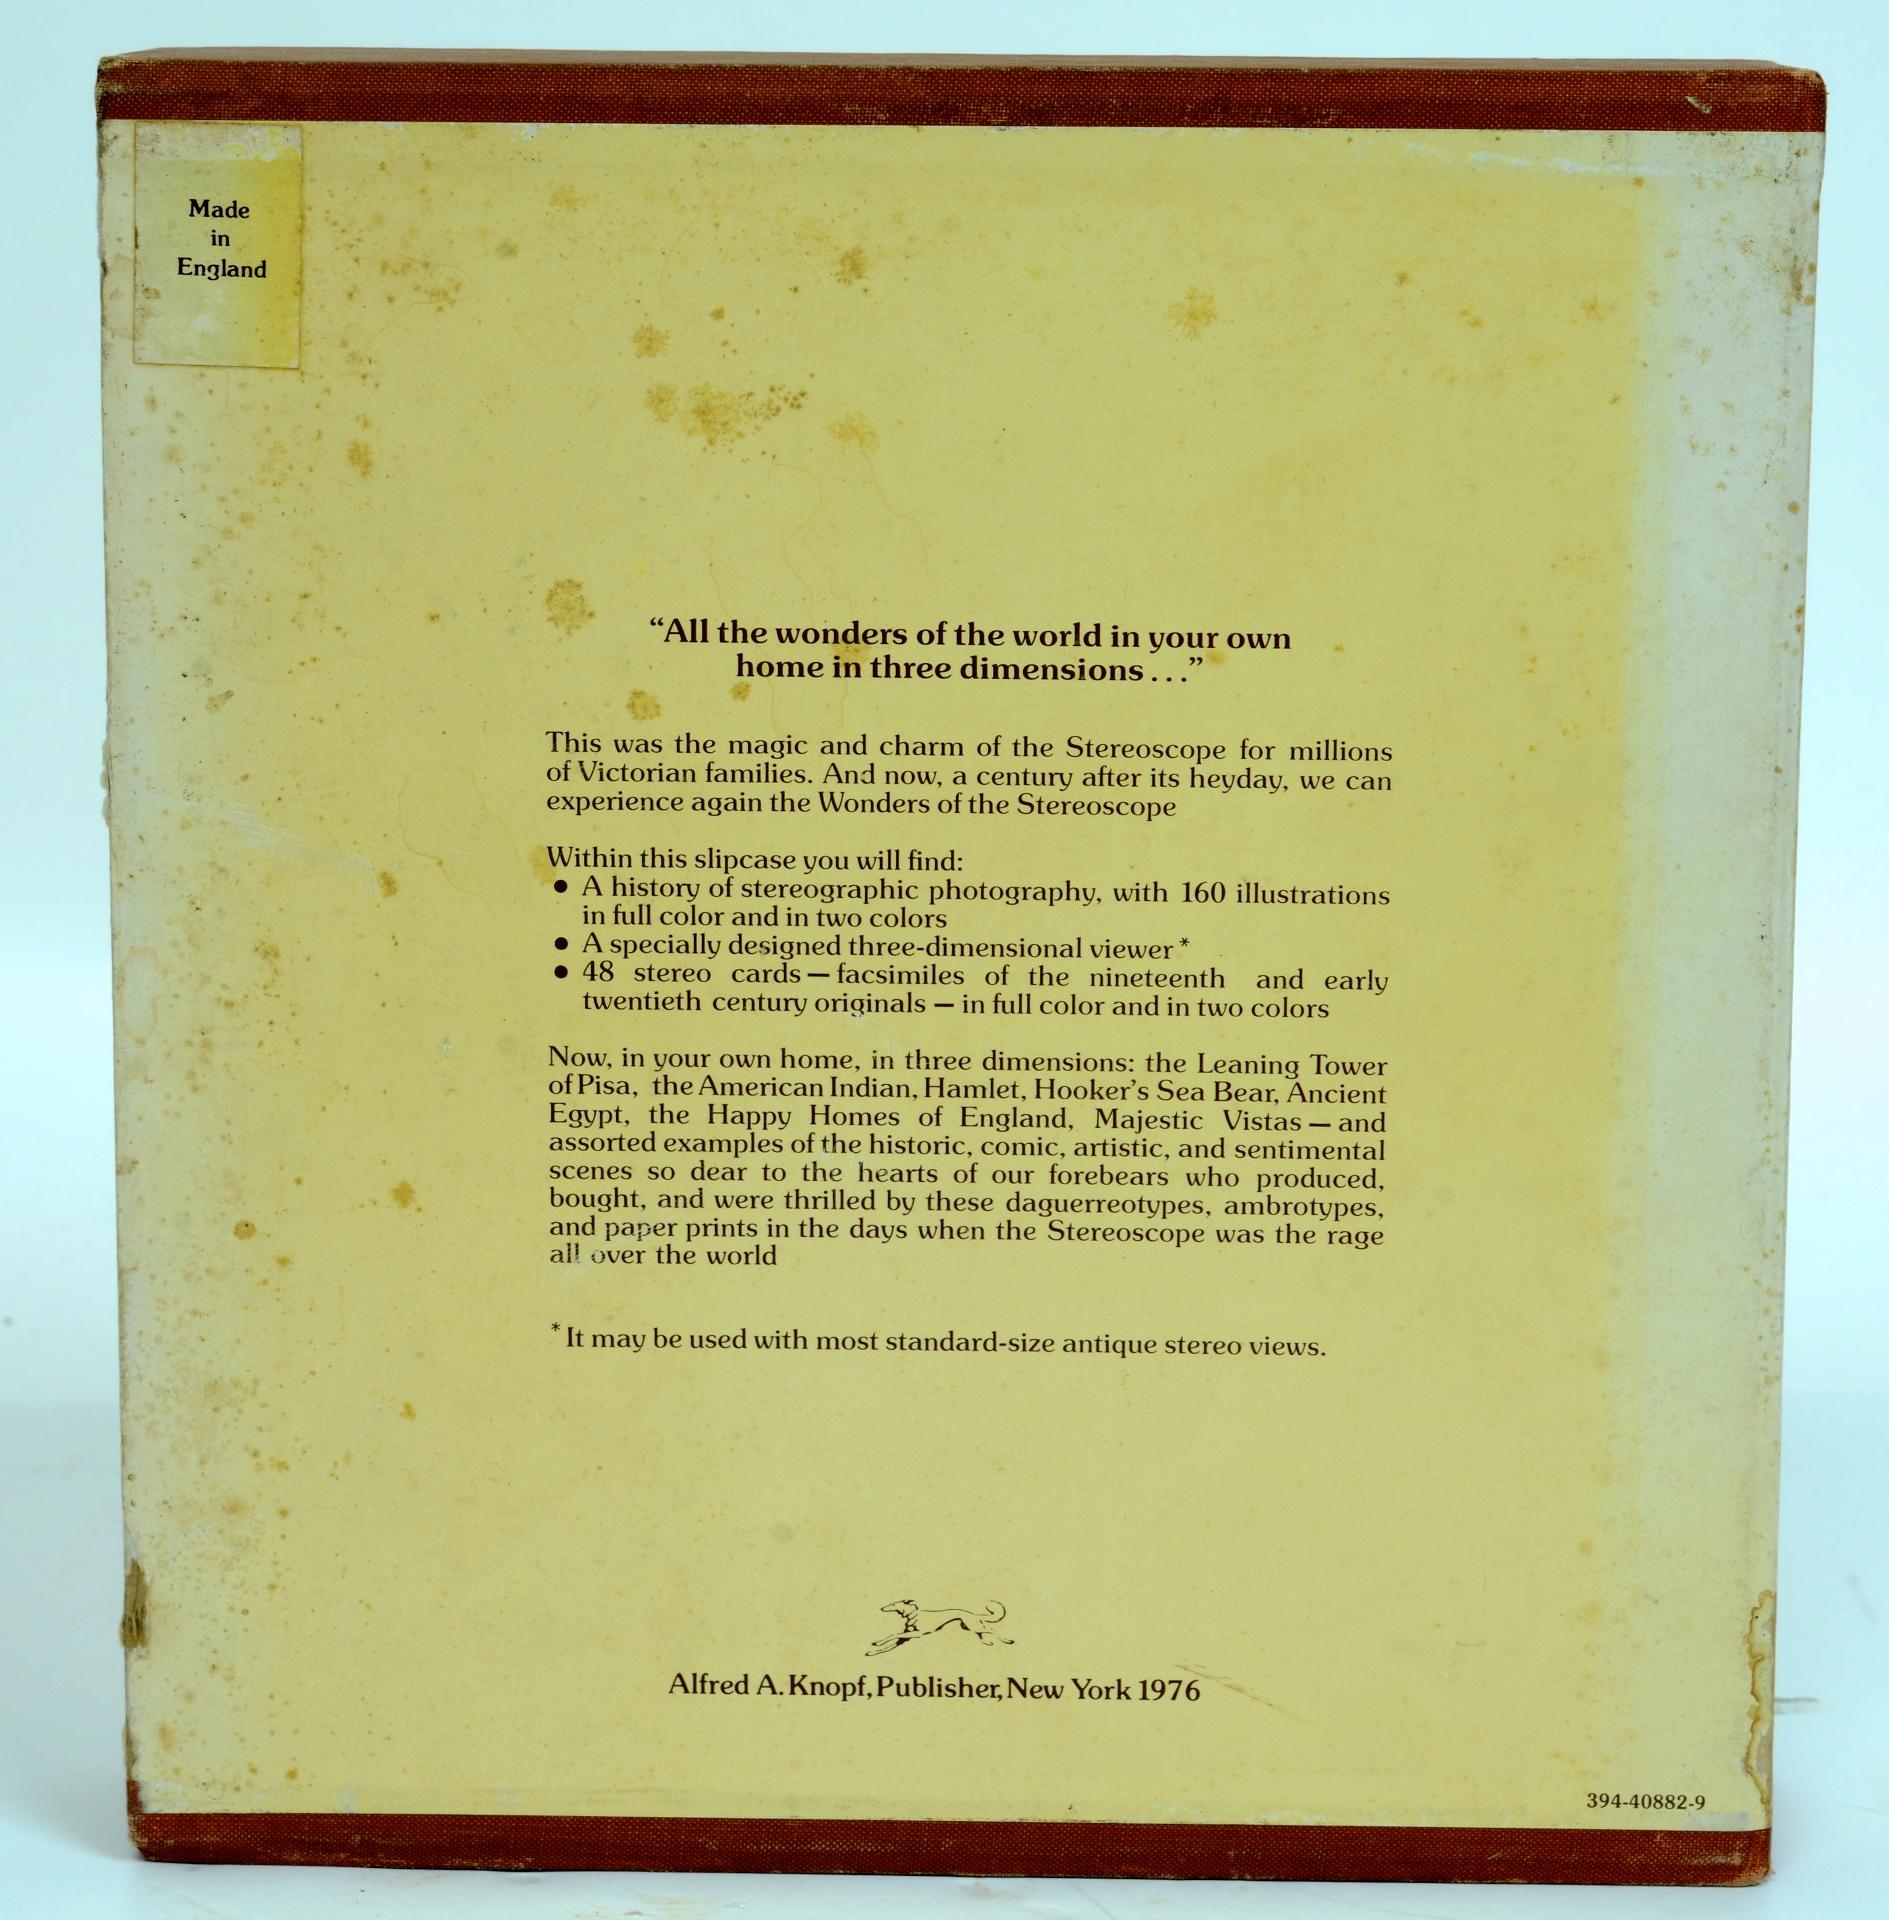 Les merveilles du stéréoscope, par John Jones. Afred A. Knopf, New York, 1976. 1ère édition sous couverture rigide avec étui d'origine contenant deux volumes avec visionneuse stéréoscopique et 48 cartes stéréo. Le volume 1 retrace l'histoire du